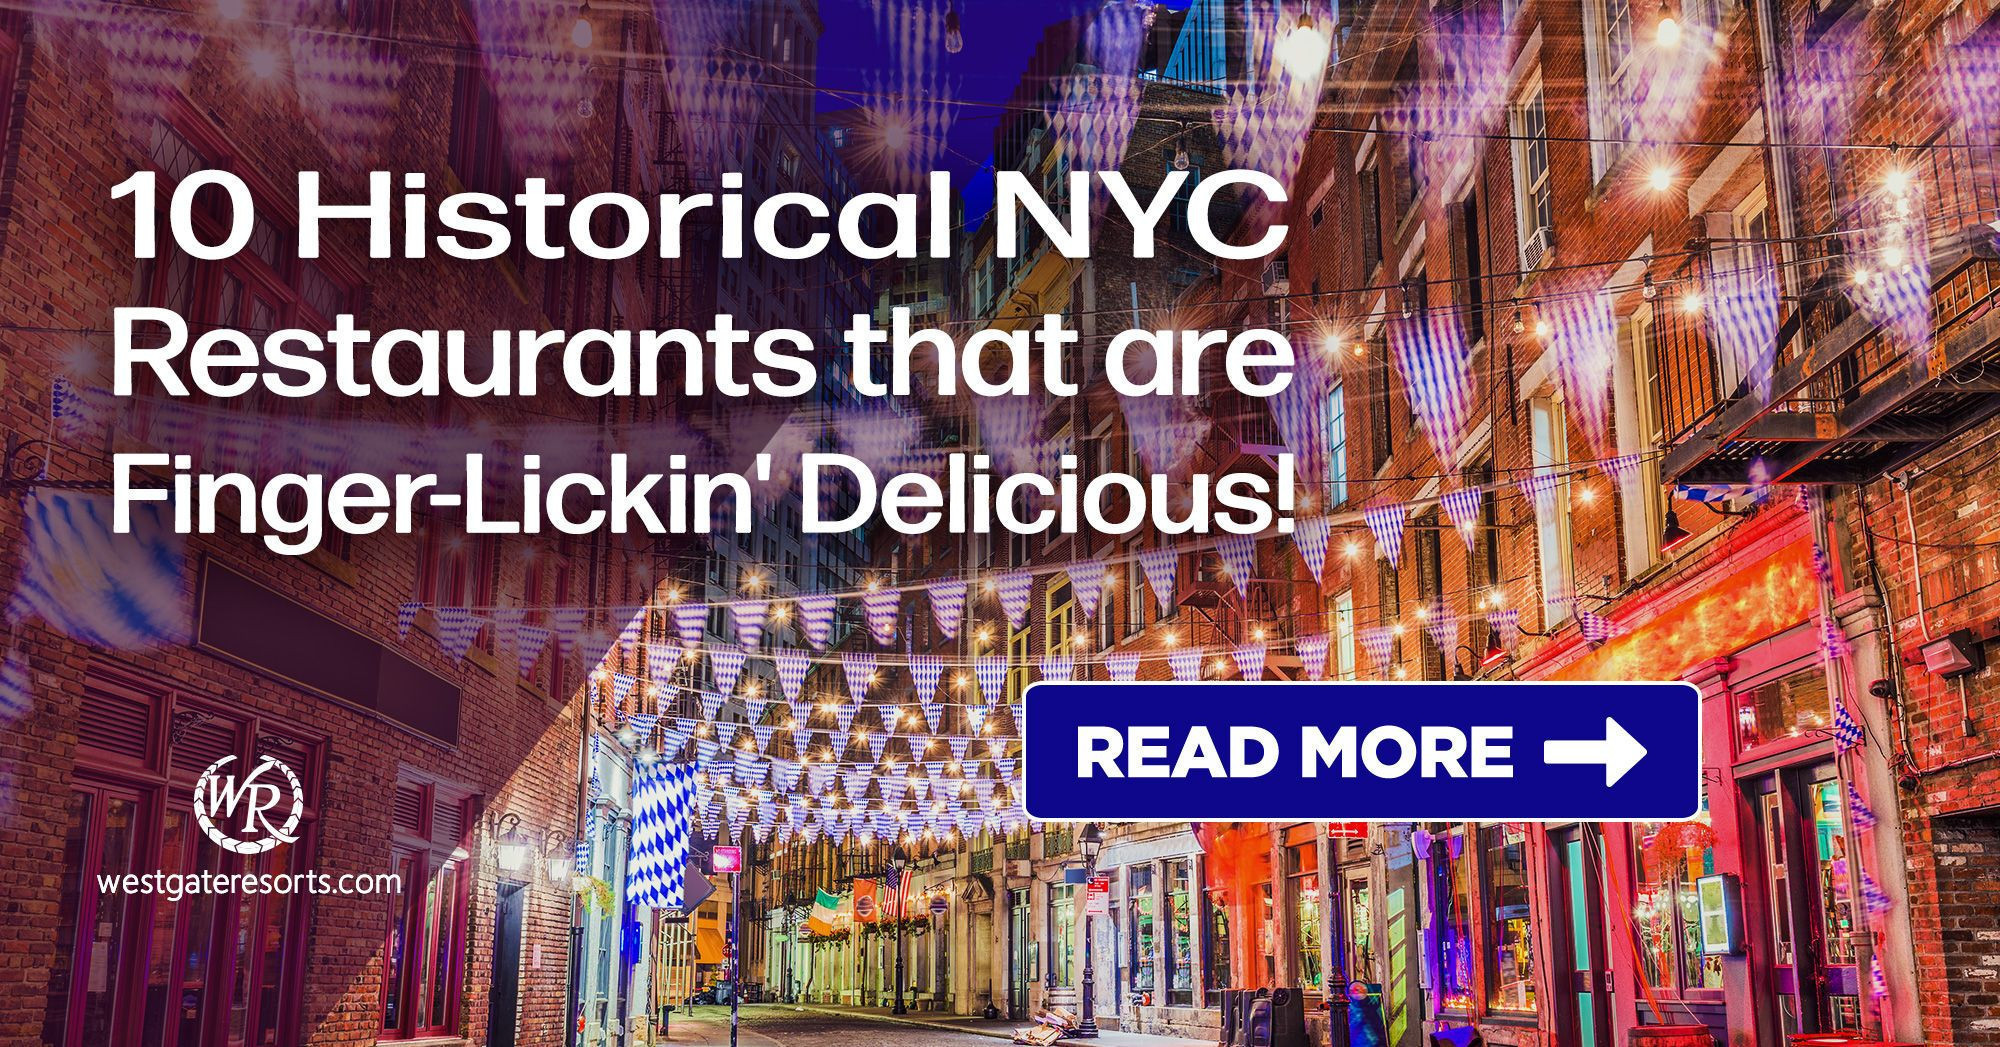 ¡10 restaurantes históricos de la ciudad de Nueva York que están deliciosos para chuparse los dedos!